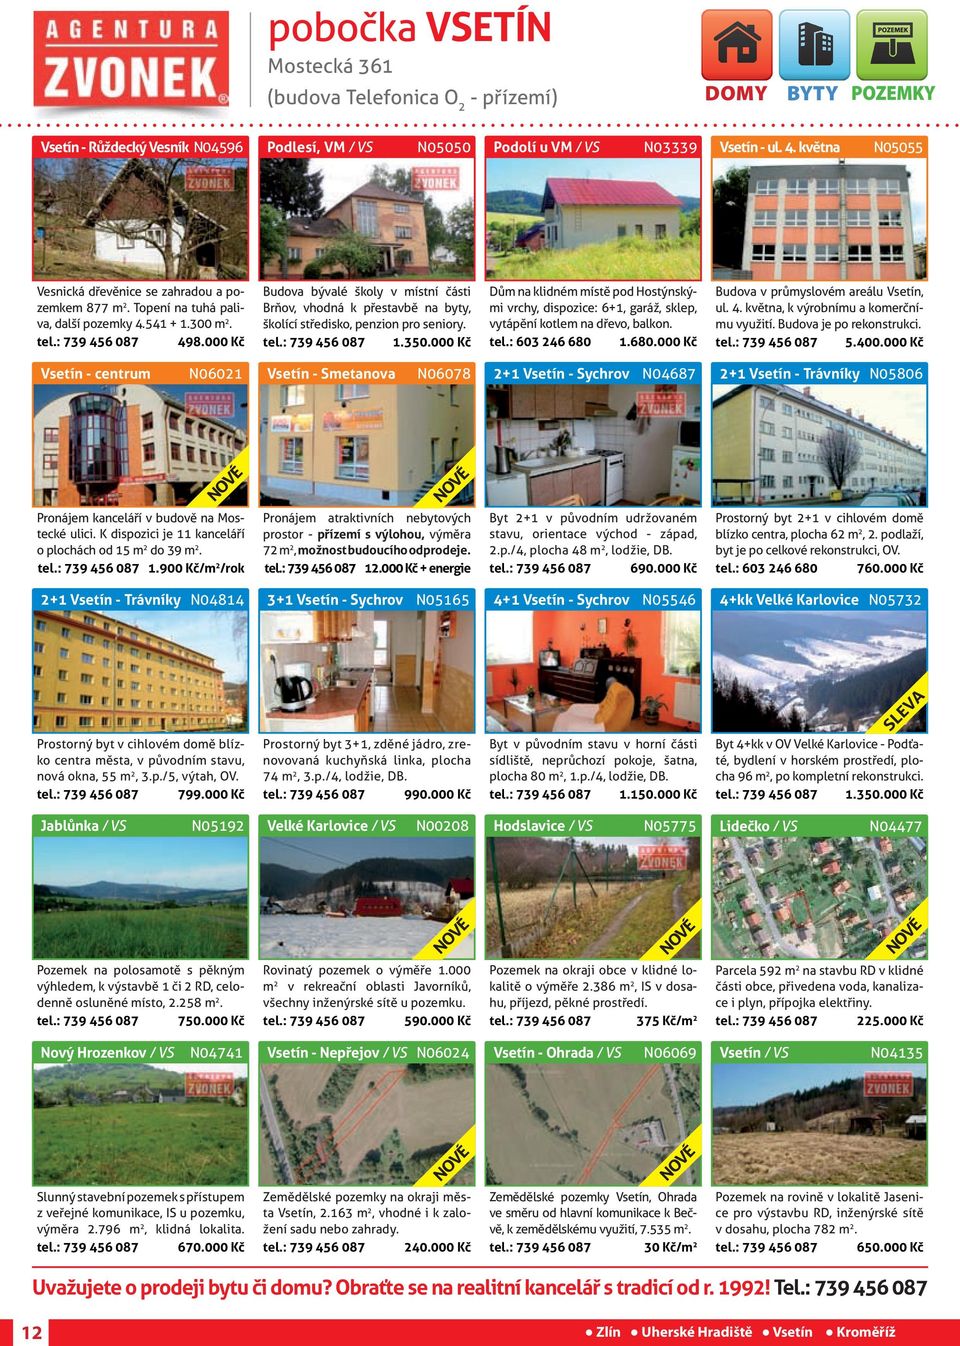 000 Kč Budova bývalé školy v místní části Brňov, vhodná k přestavbě byty, školící středisko, penzion pro seniory. tel.: 739 456 087 1.350.